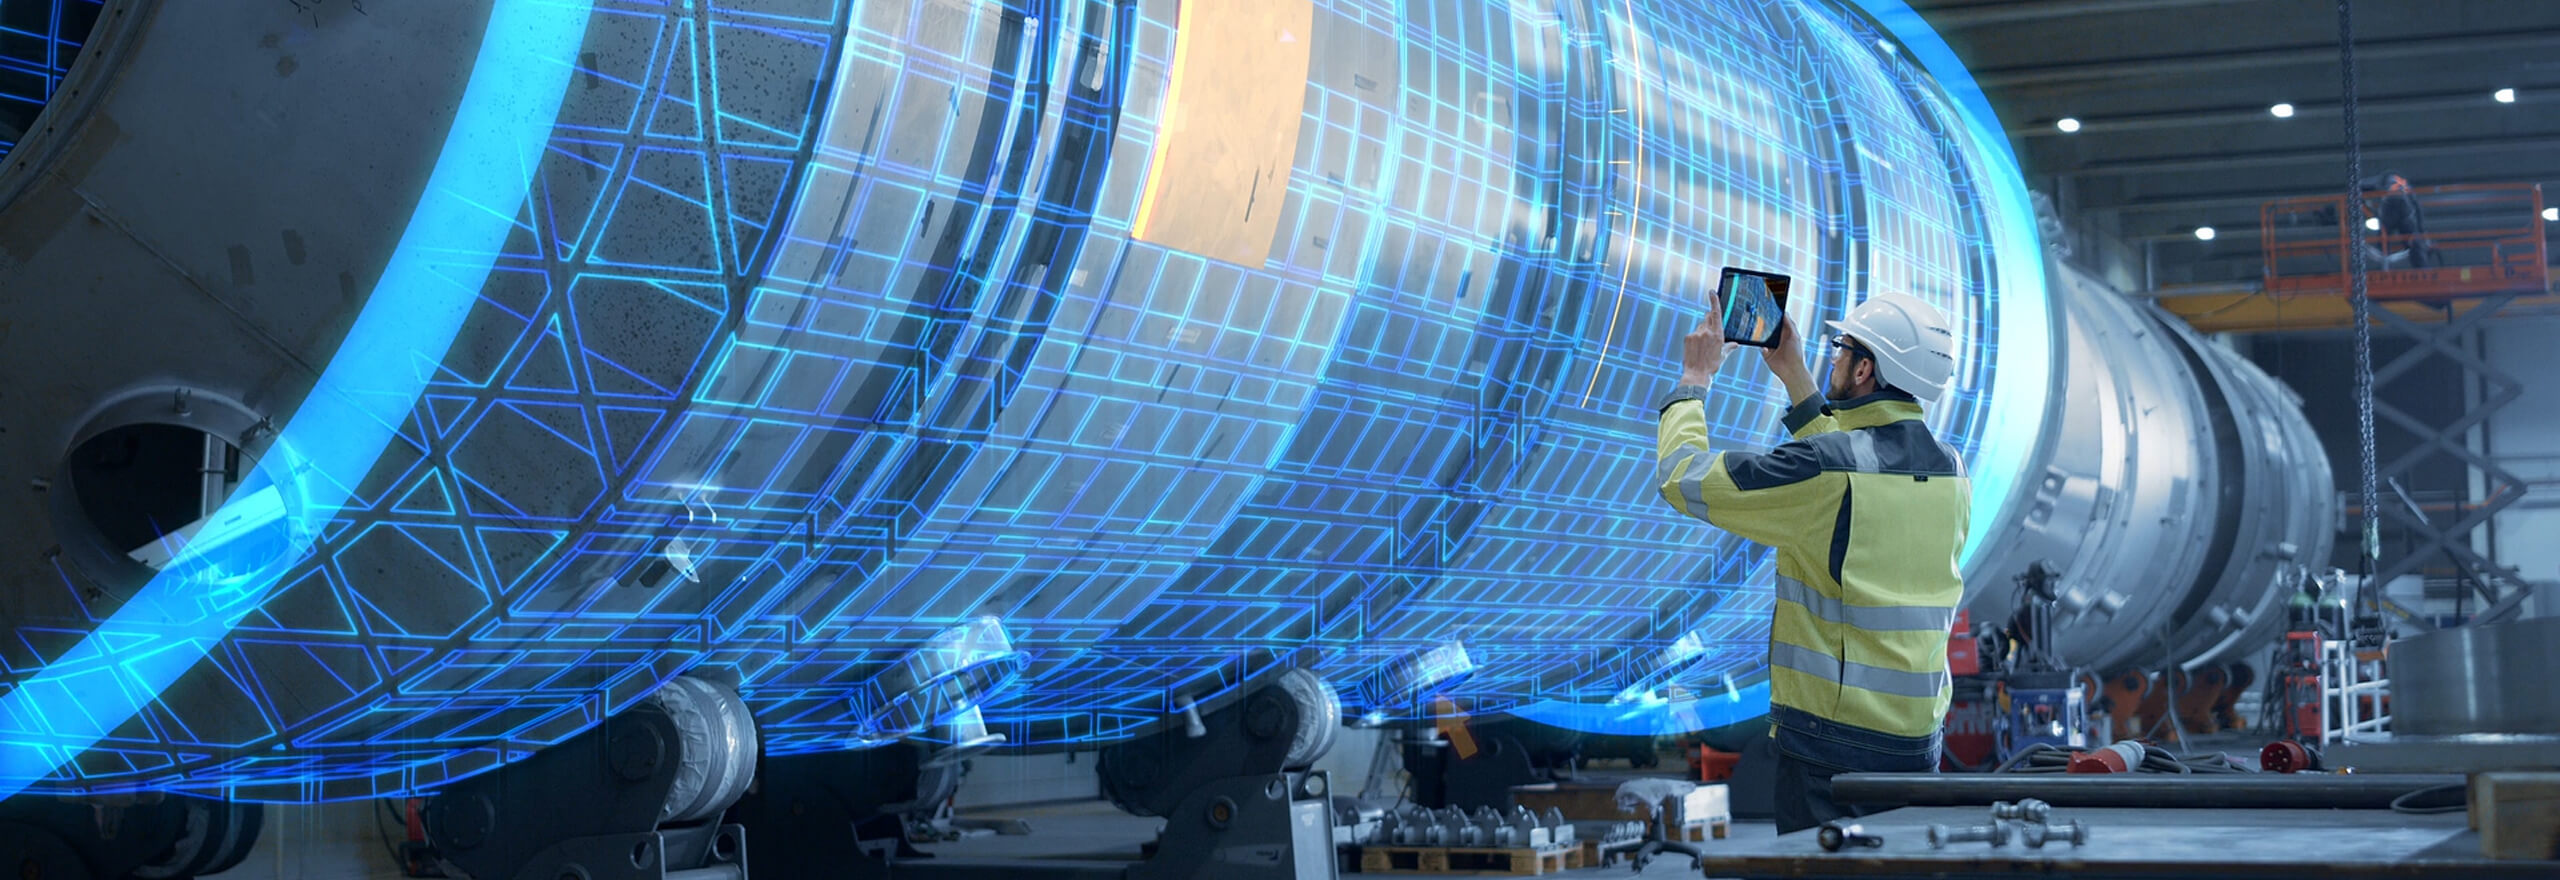 Un ingeniero en la planta de producción sosteniendo una tableta e inspeccionando un aerogenerador.